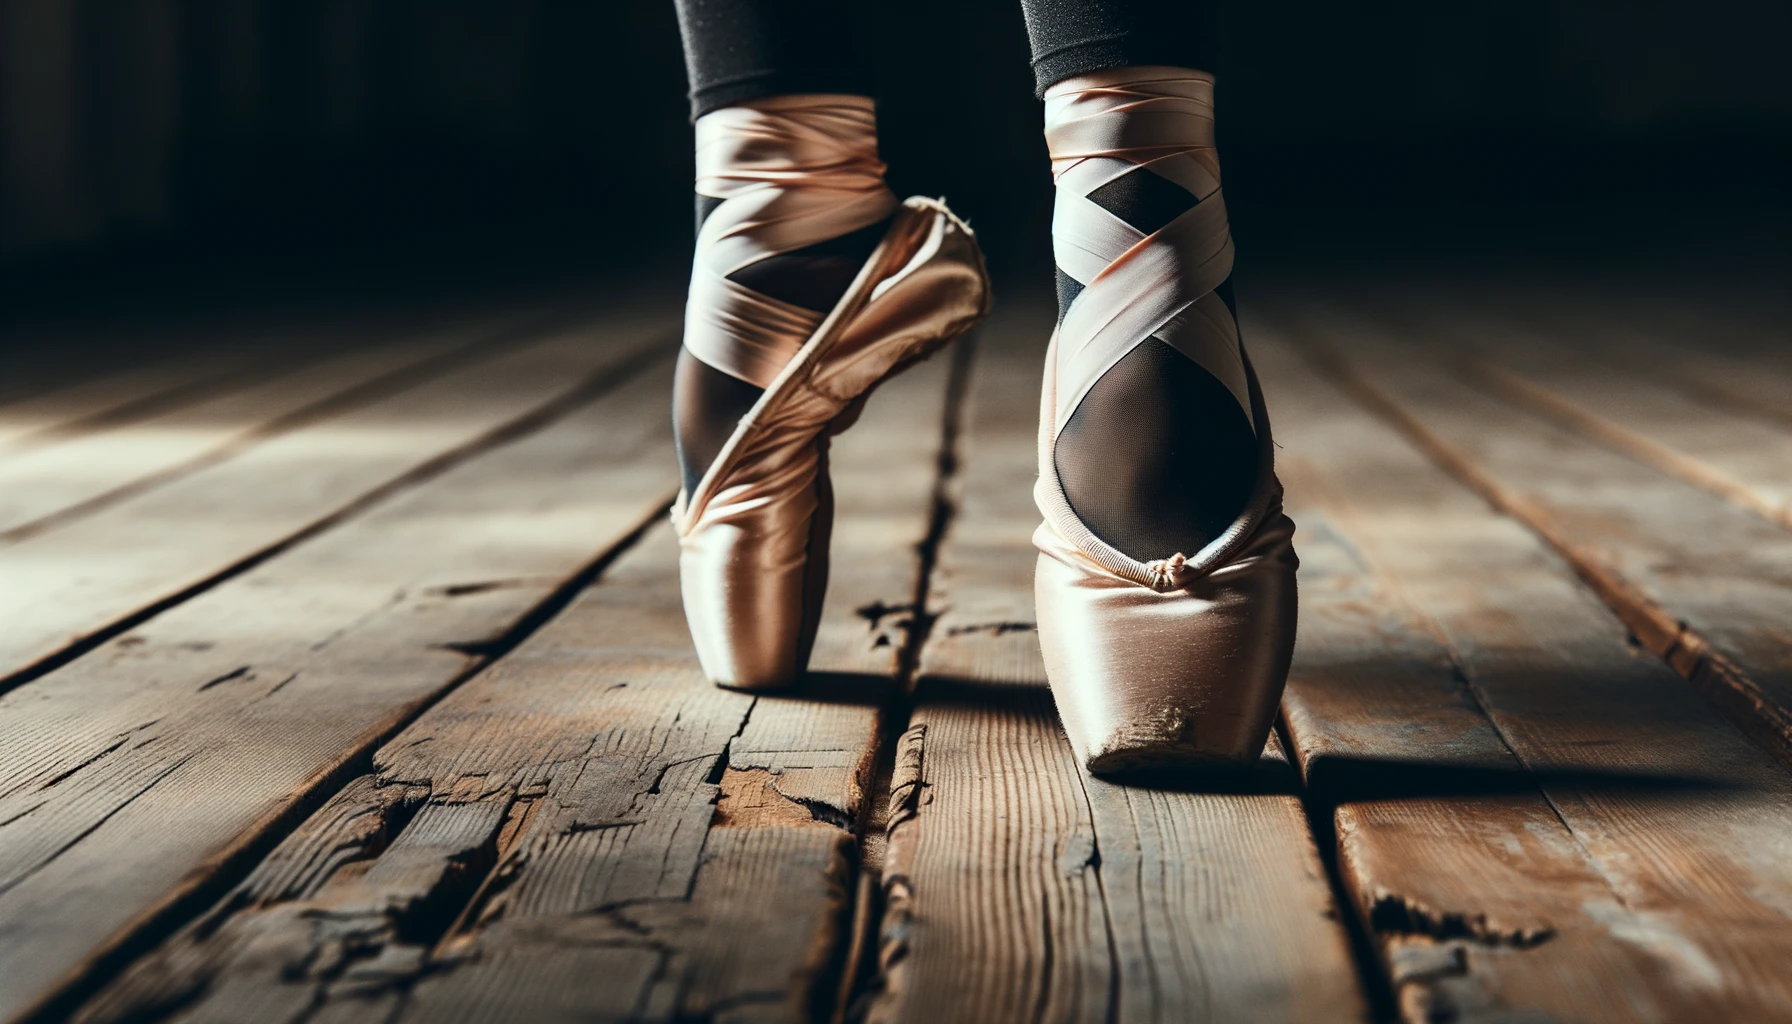 Foto der Füße einer Balletttänzerin in abgenutzten Spitzenschuhen, die den intensiven Gebrauch und die Bedeutung der Schuhe im Ballett betonen, auf einem hölzernen Tanzboden.